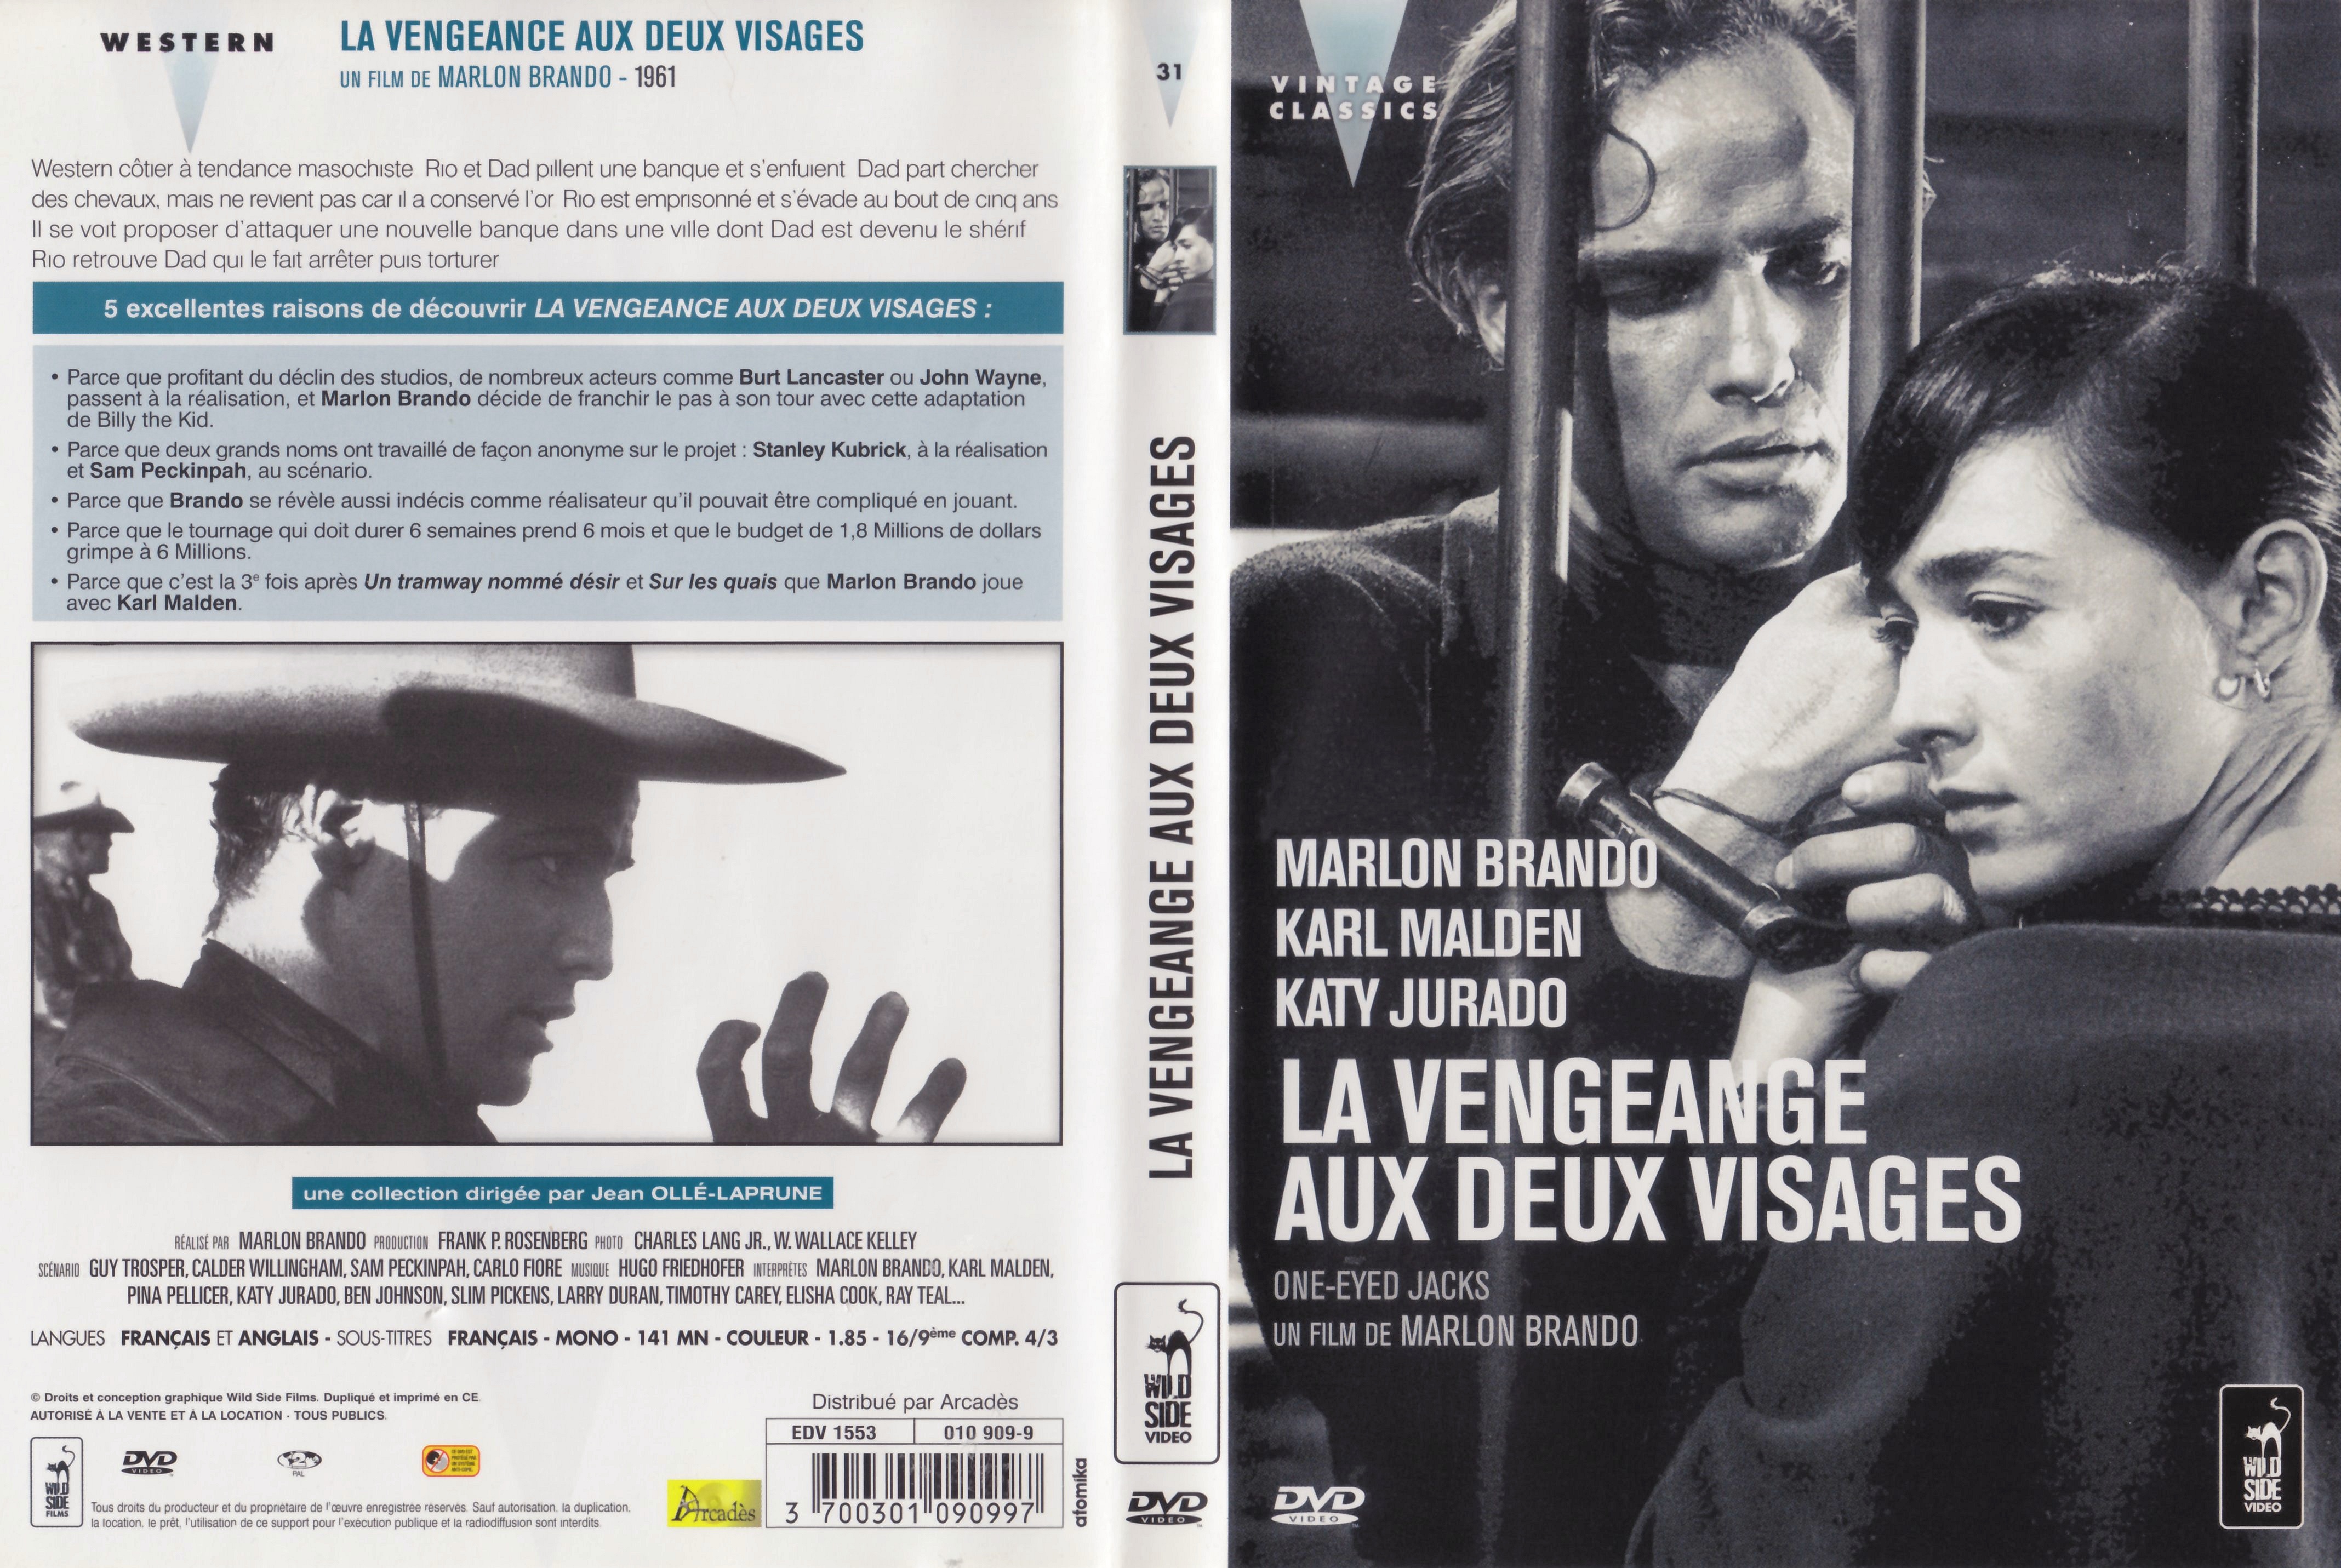 Jaquette DVD La vengeance aux deux visages v4